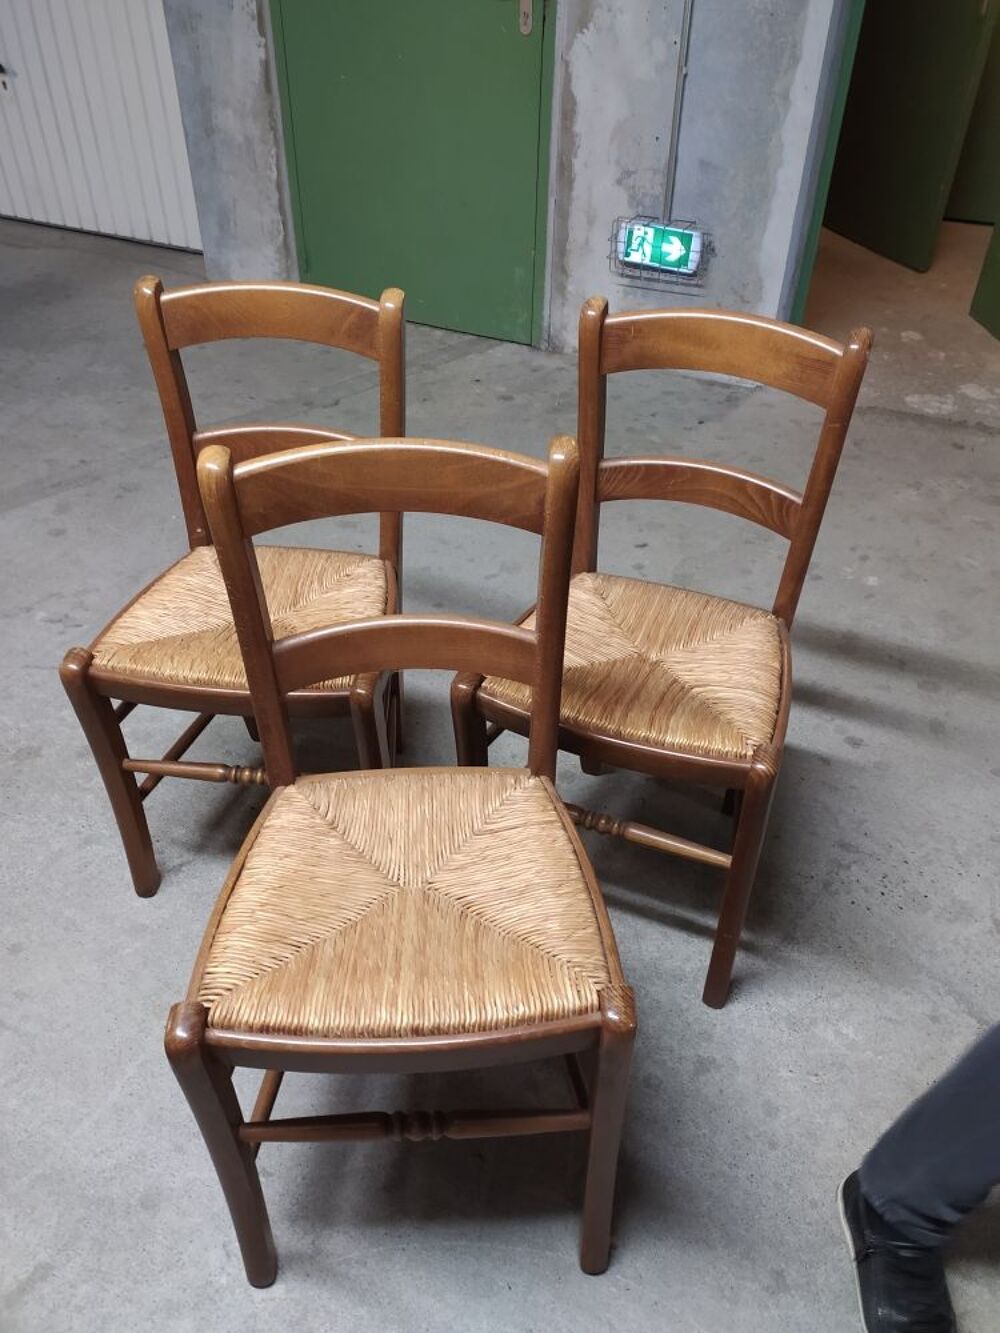 3 chaises Meubles